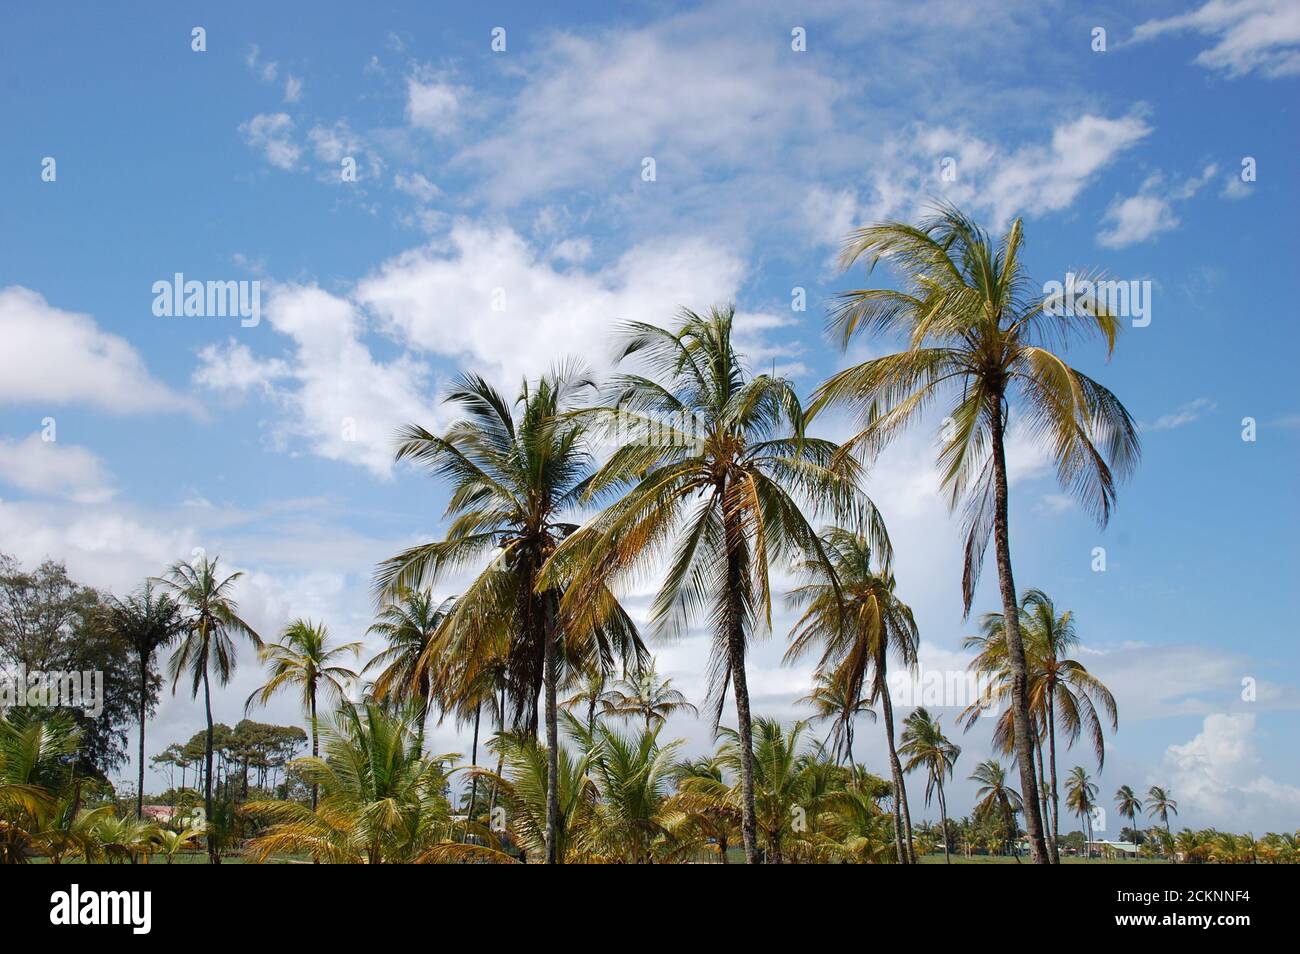 Sud America, guyana francese, Kourou, il boschetto di cocco è un magnifico sito esotico e tropicale situato sulla costa atlantica, vicino alla torre Dreyfus. Foto Stock